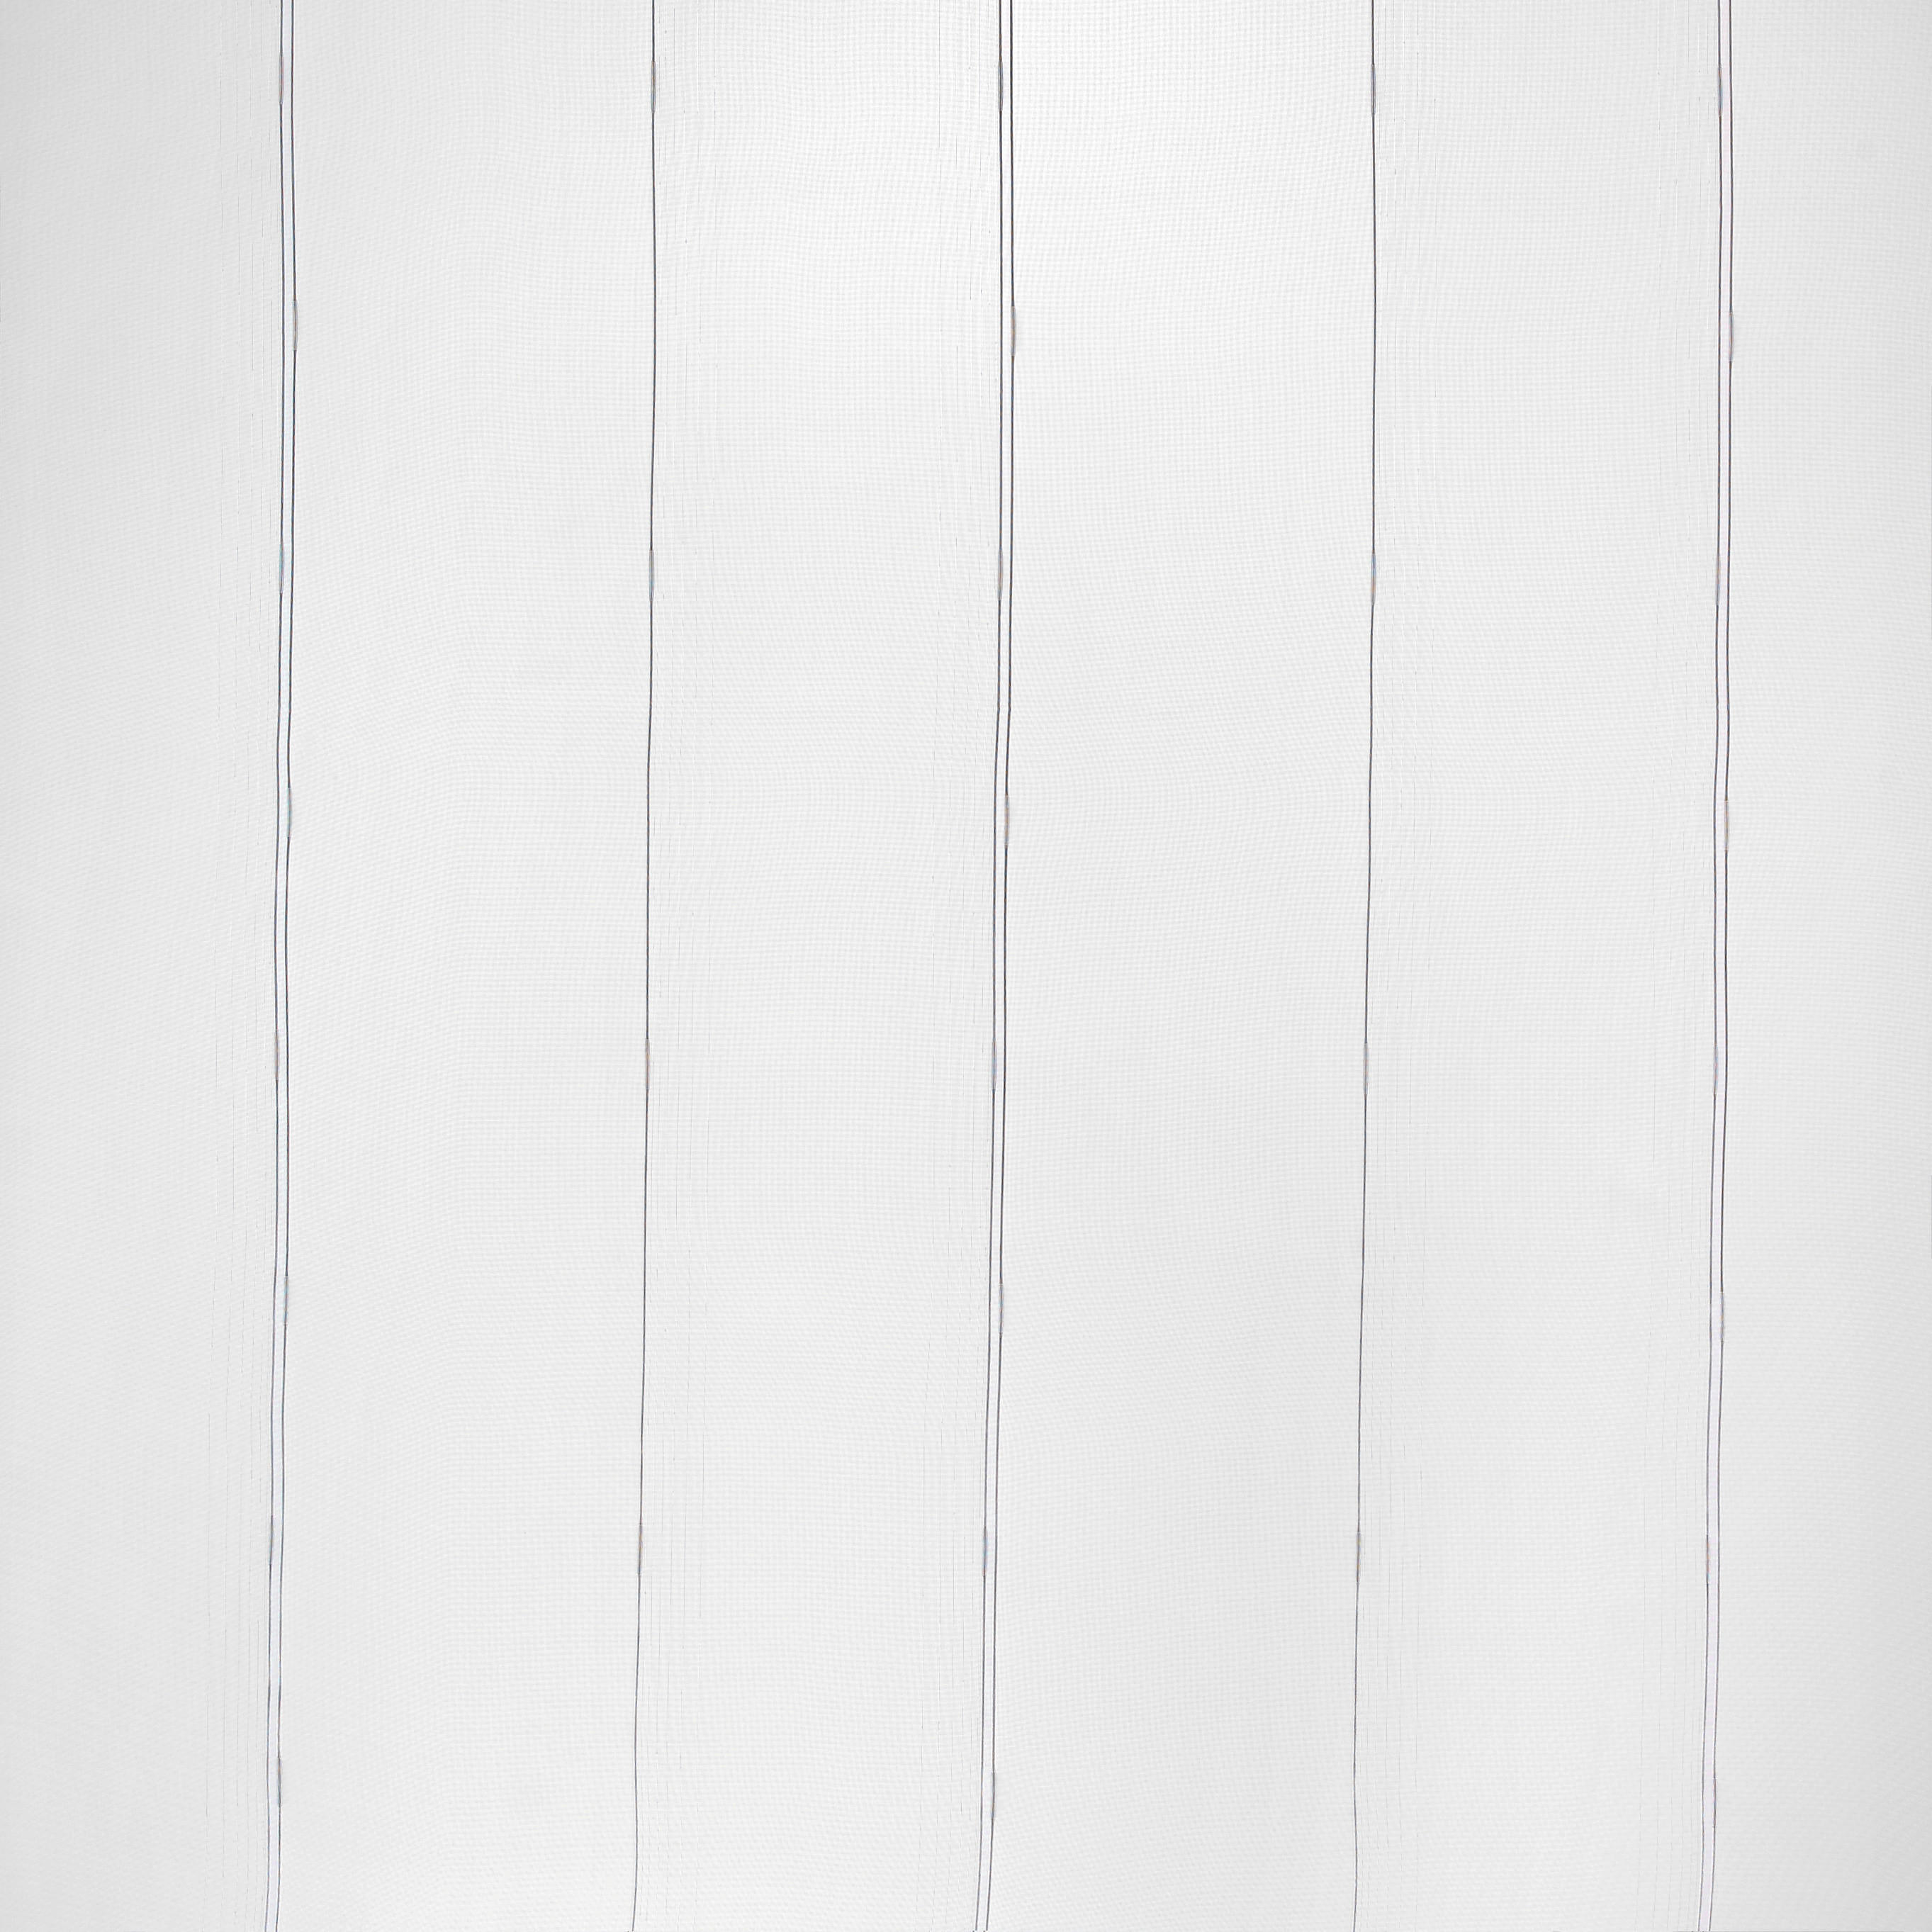 ZÁCLONA, priehľadné, 300 cm - sivá/biela, Konventionell, textil (300cm) - Esposa